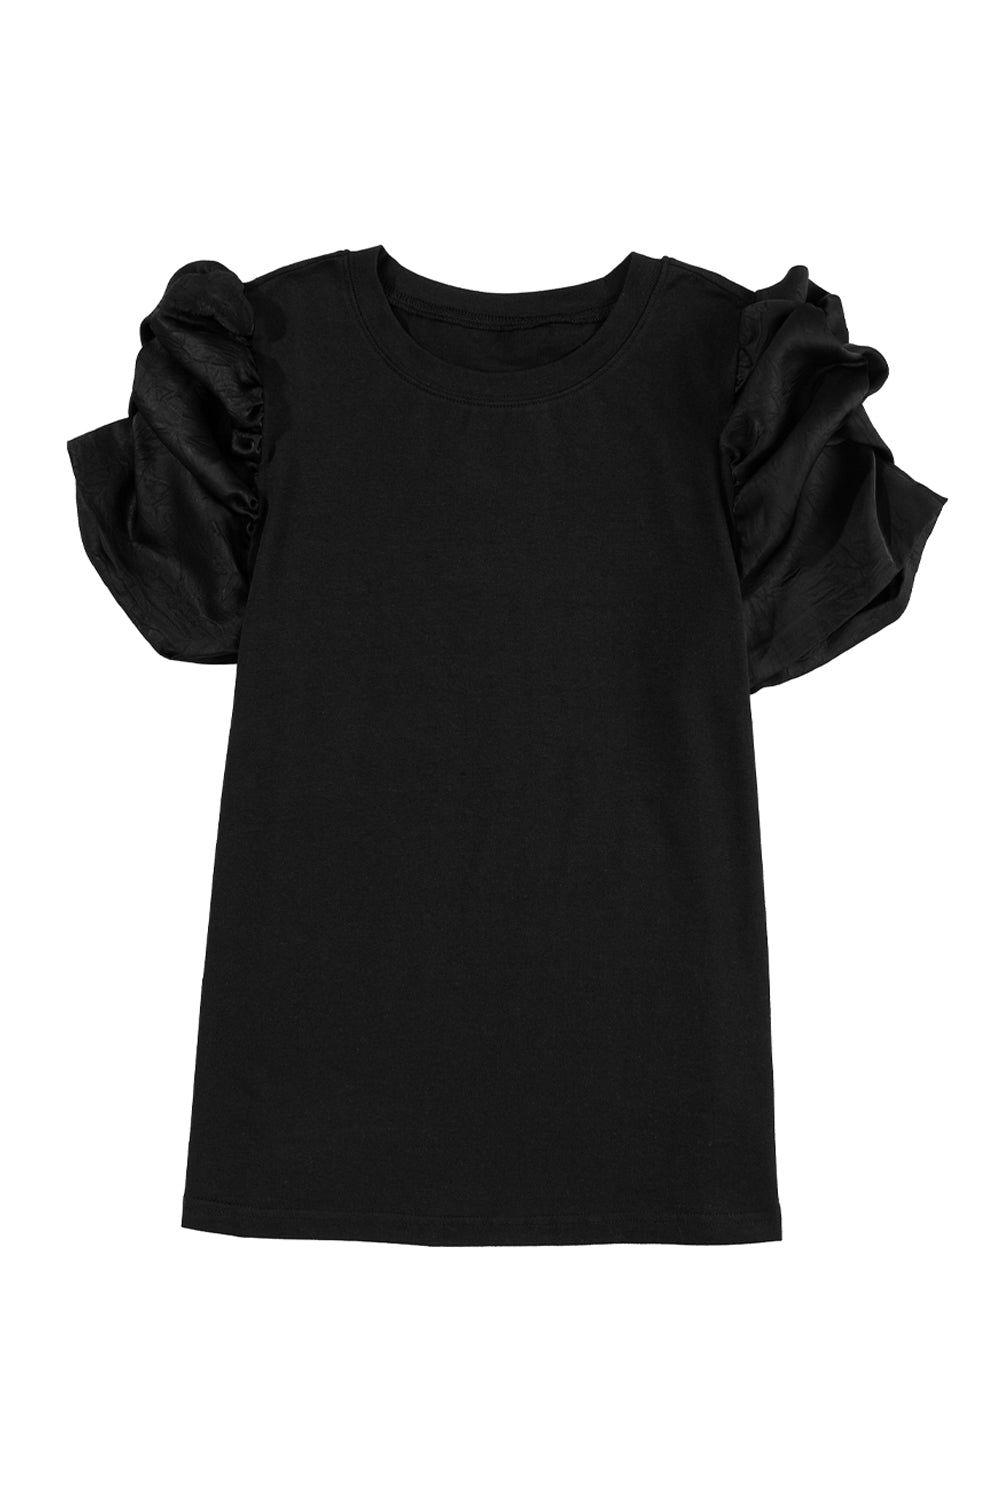 Crna majica s nabranim puf rukavima i okruglim izrezom